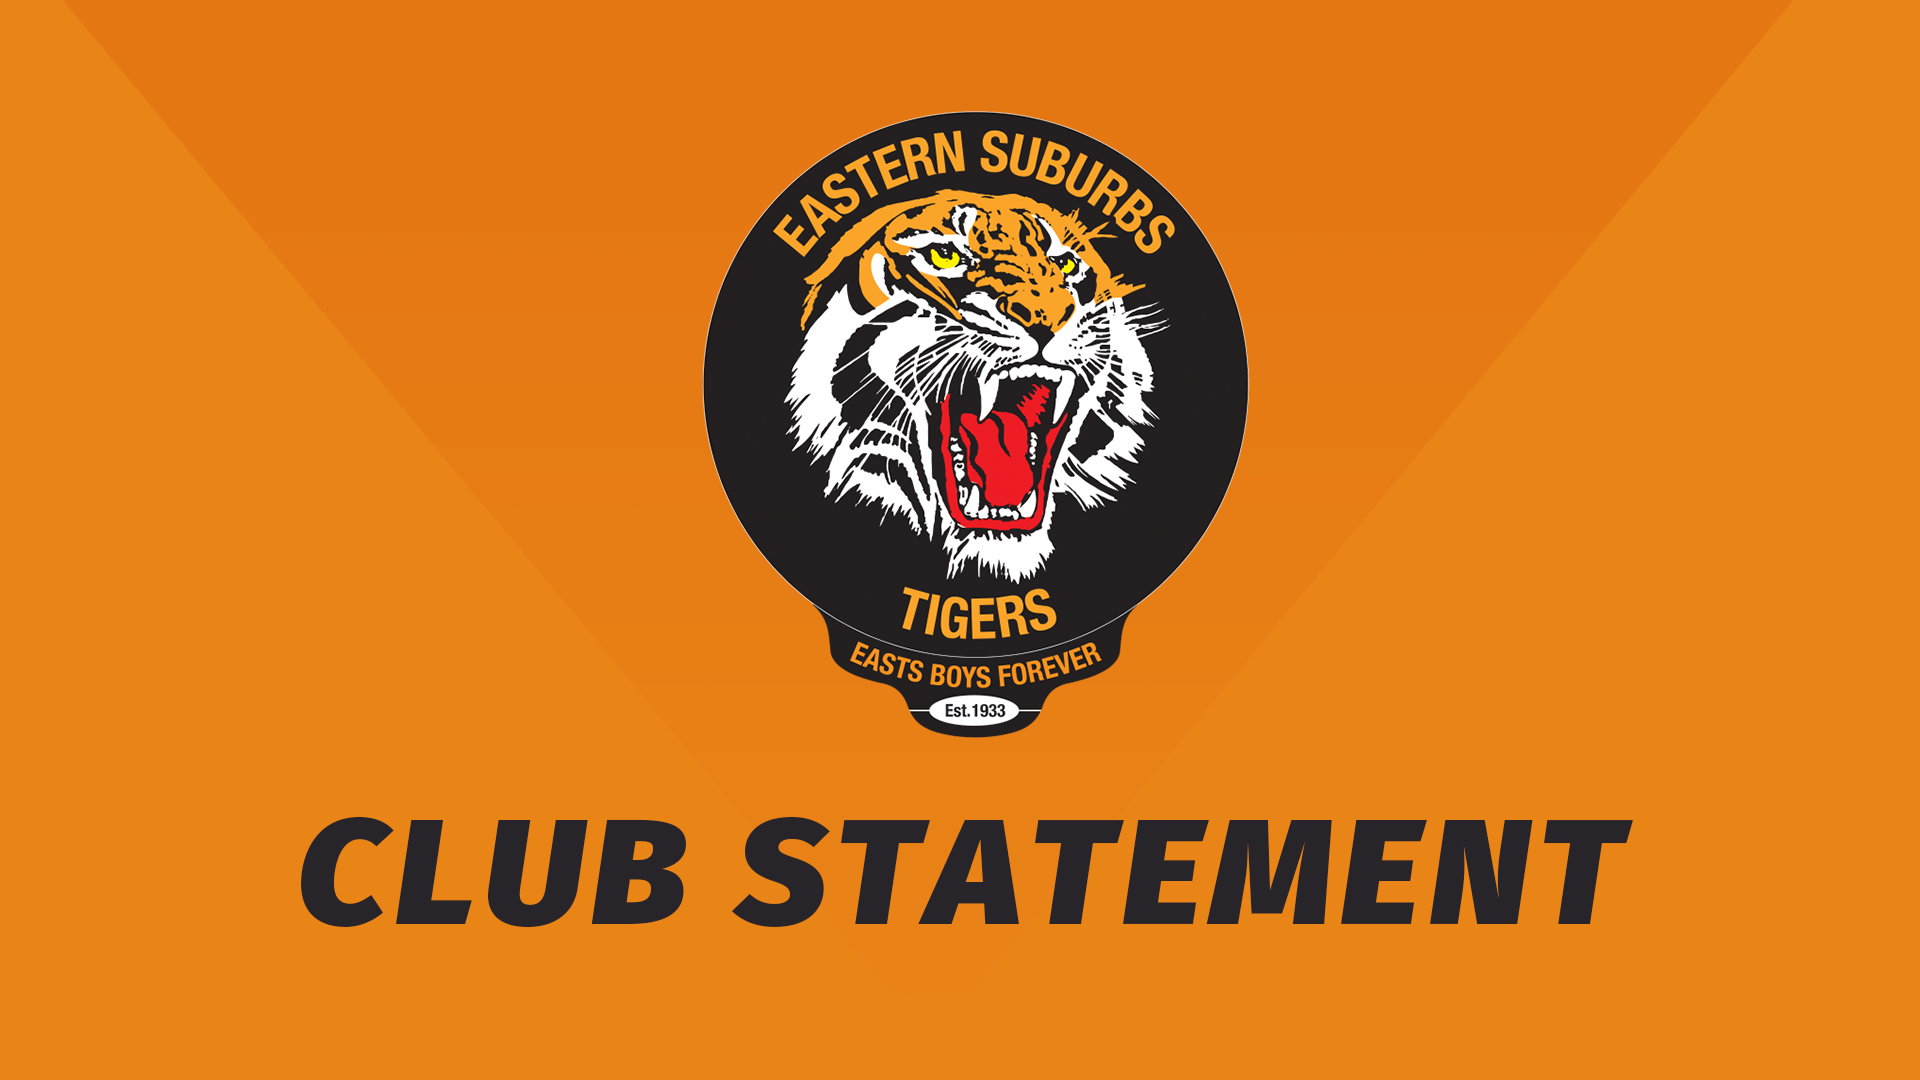 Suzuki Easts Tigers Club Statement